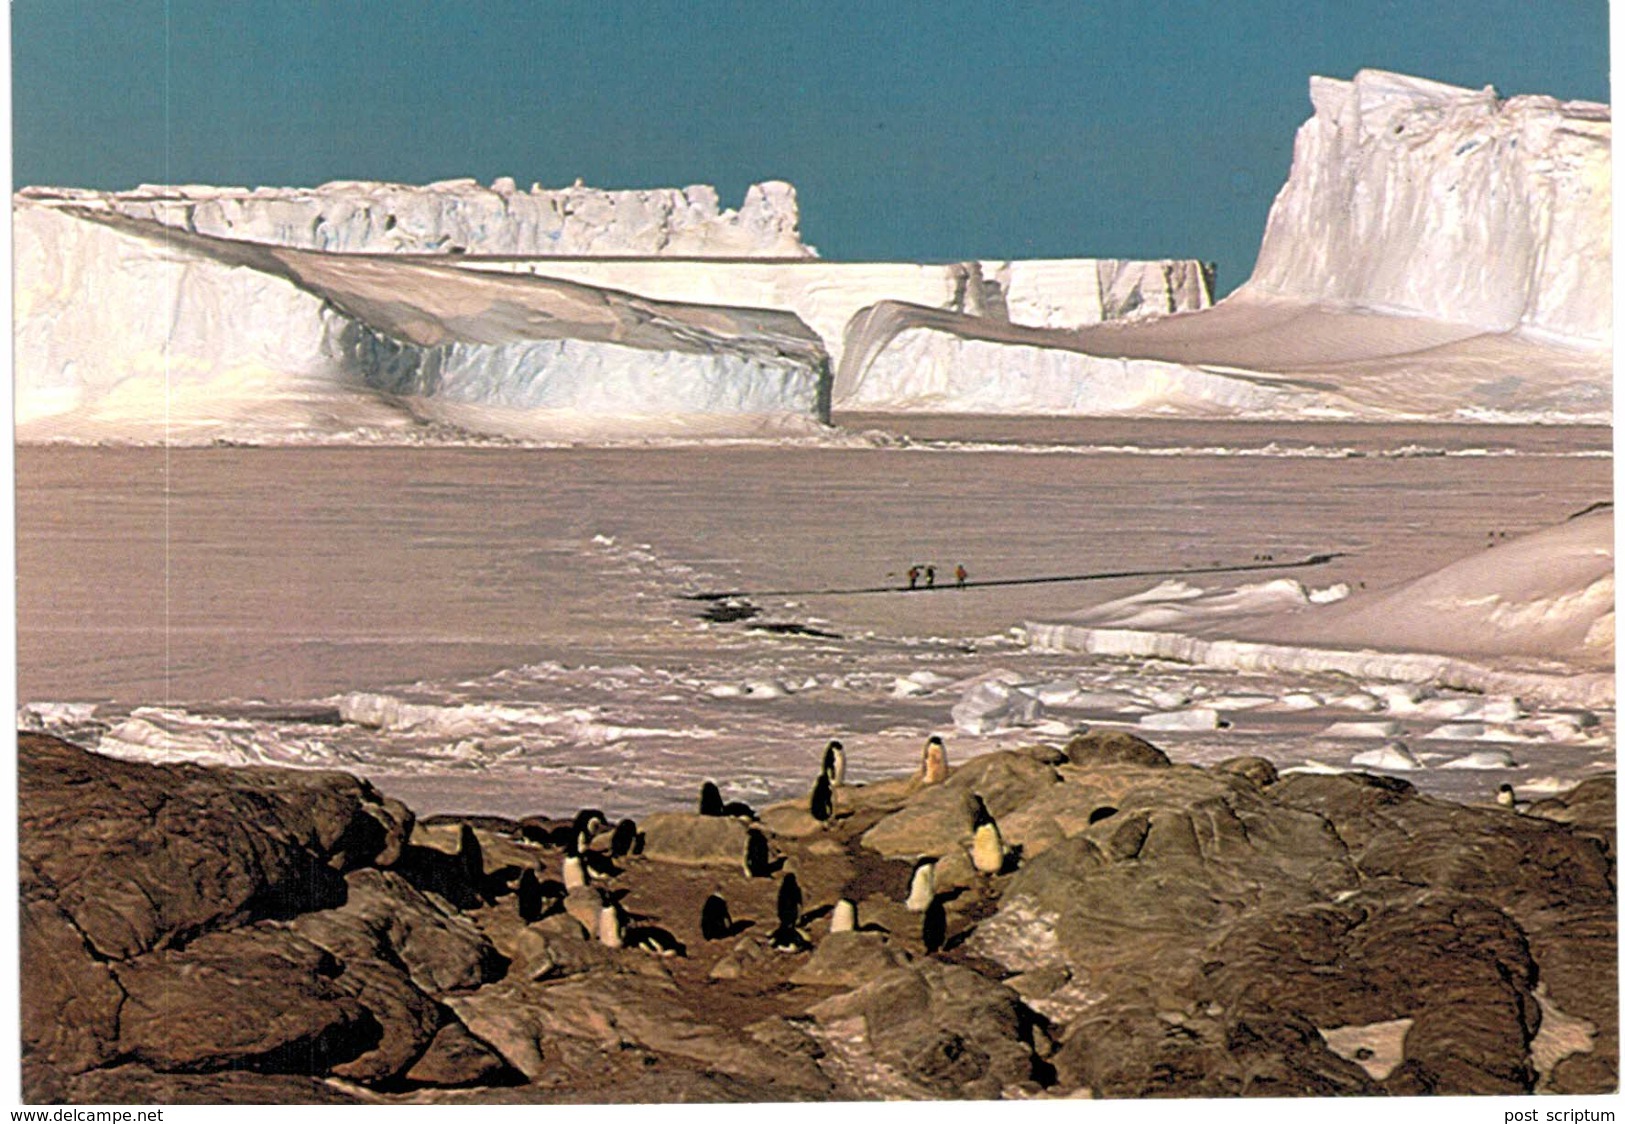 Terre Adélie - Base Dumont D'Urville - Manchots Adélie Devant Les Icebergs Du Glacier De L'Astrolabe - TAAF : Terres Australes Antarctiques Françaises